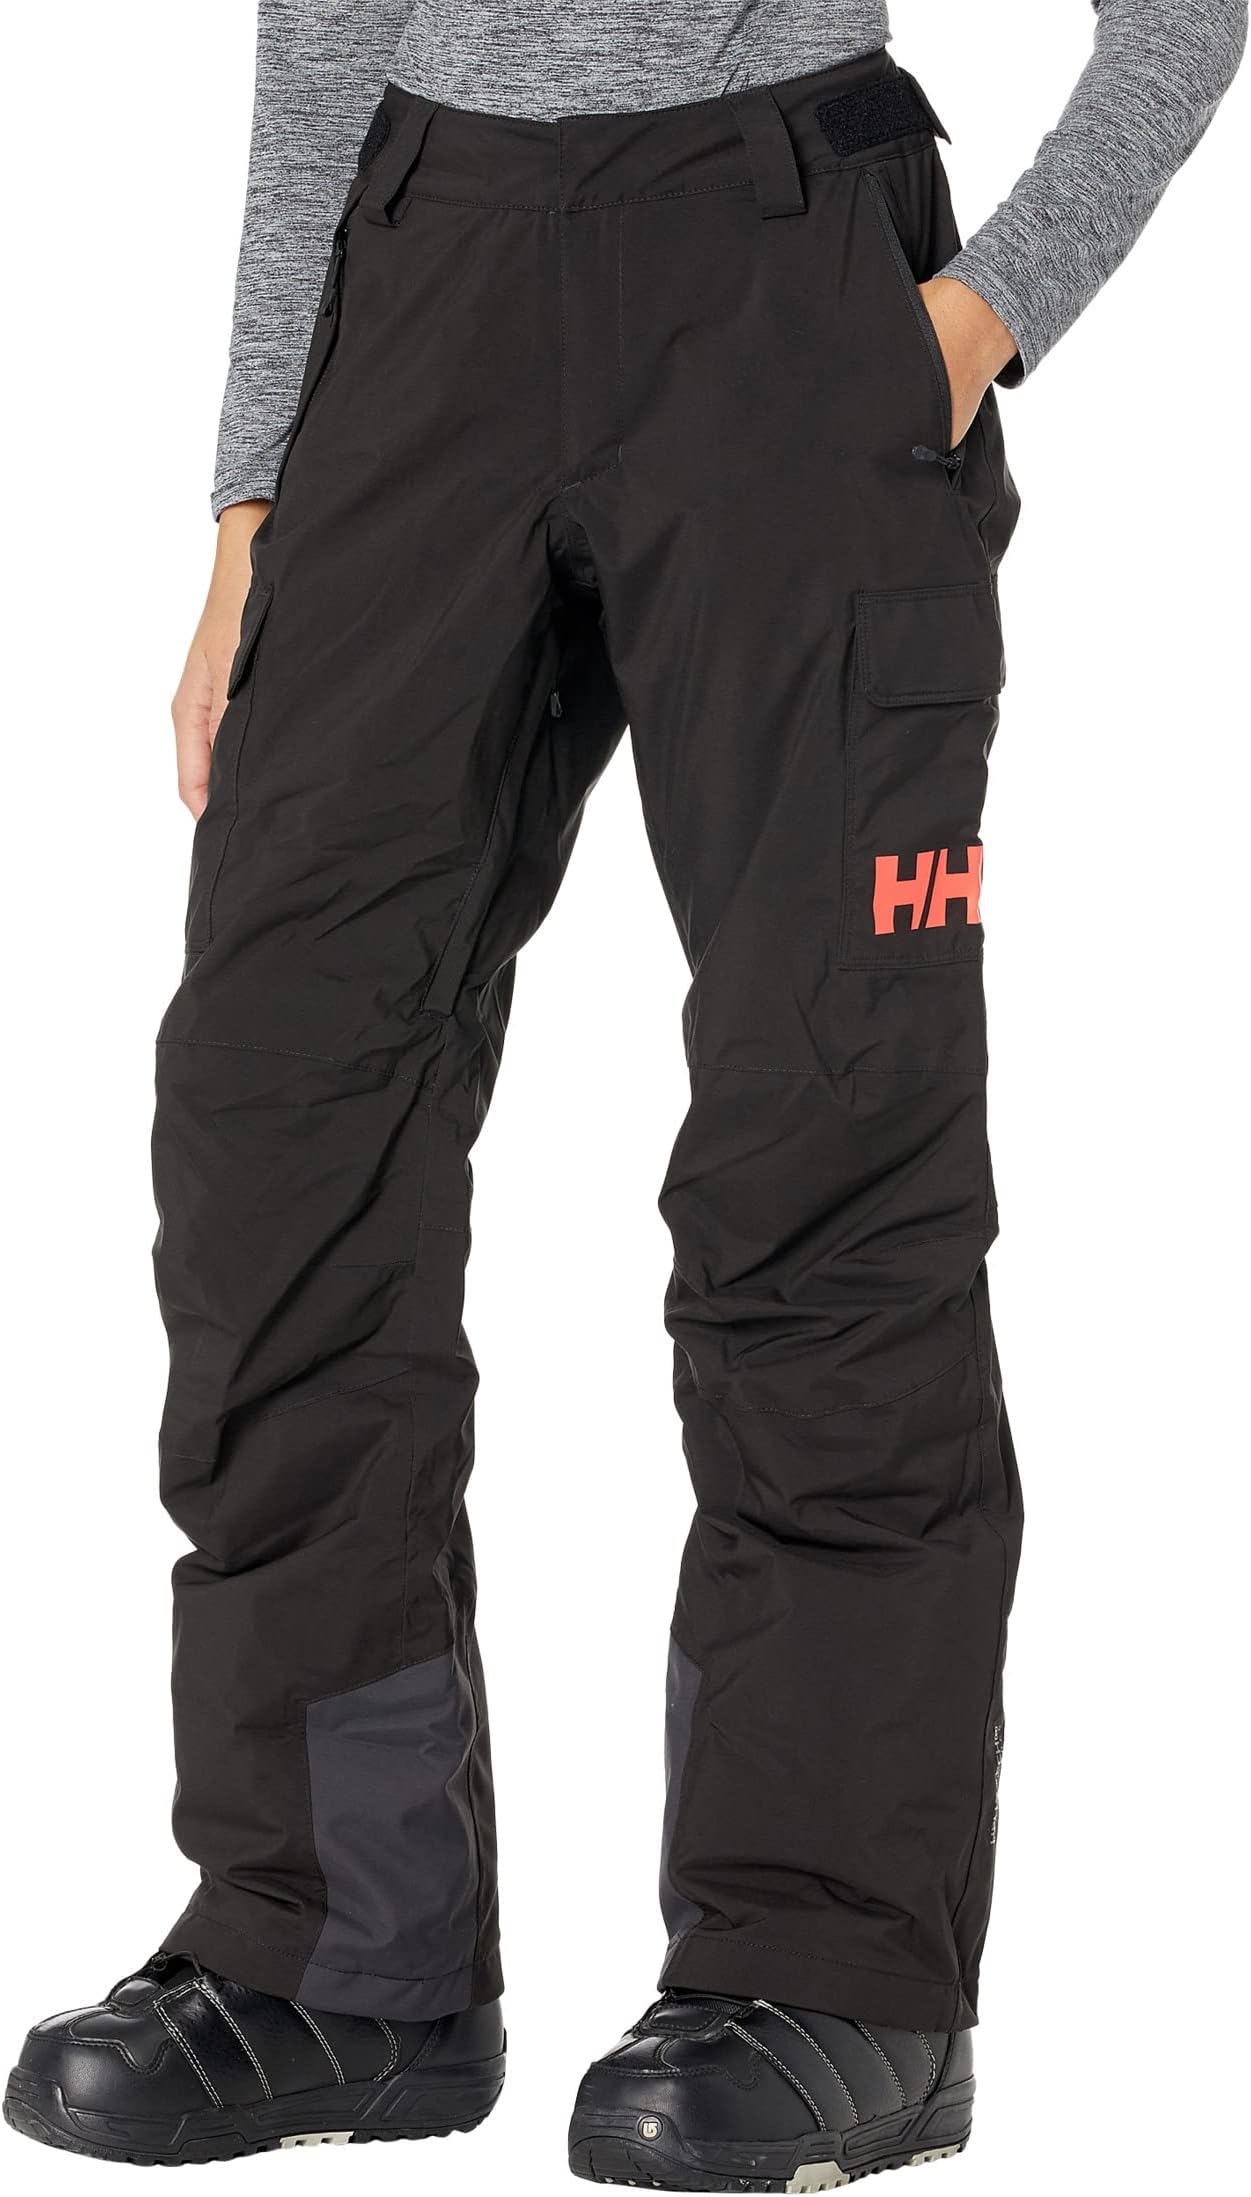 брюки switch cargo insulated pants helly hansen цвет terrazzo Брюки Switch Cargo Insulated Pants Helly Hansen, черный